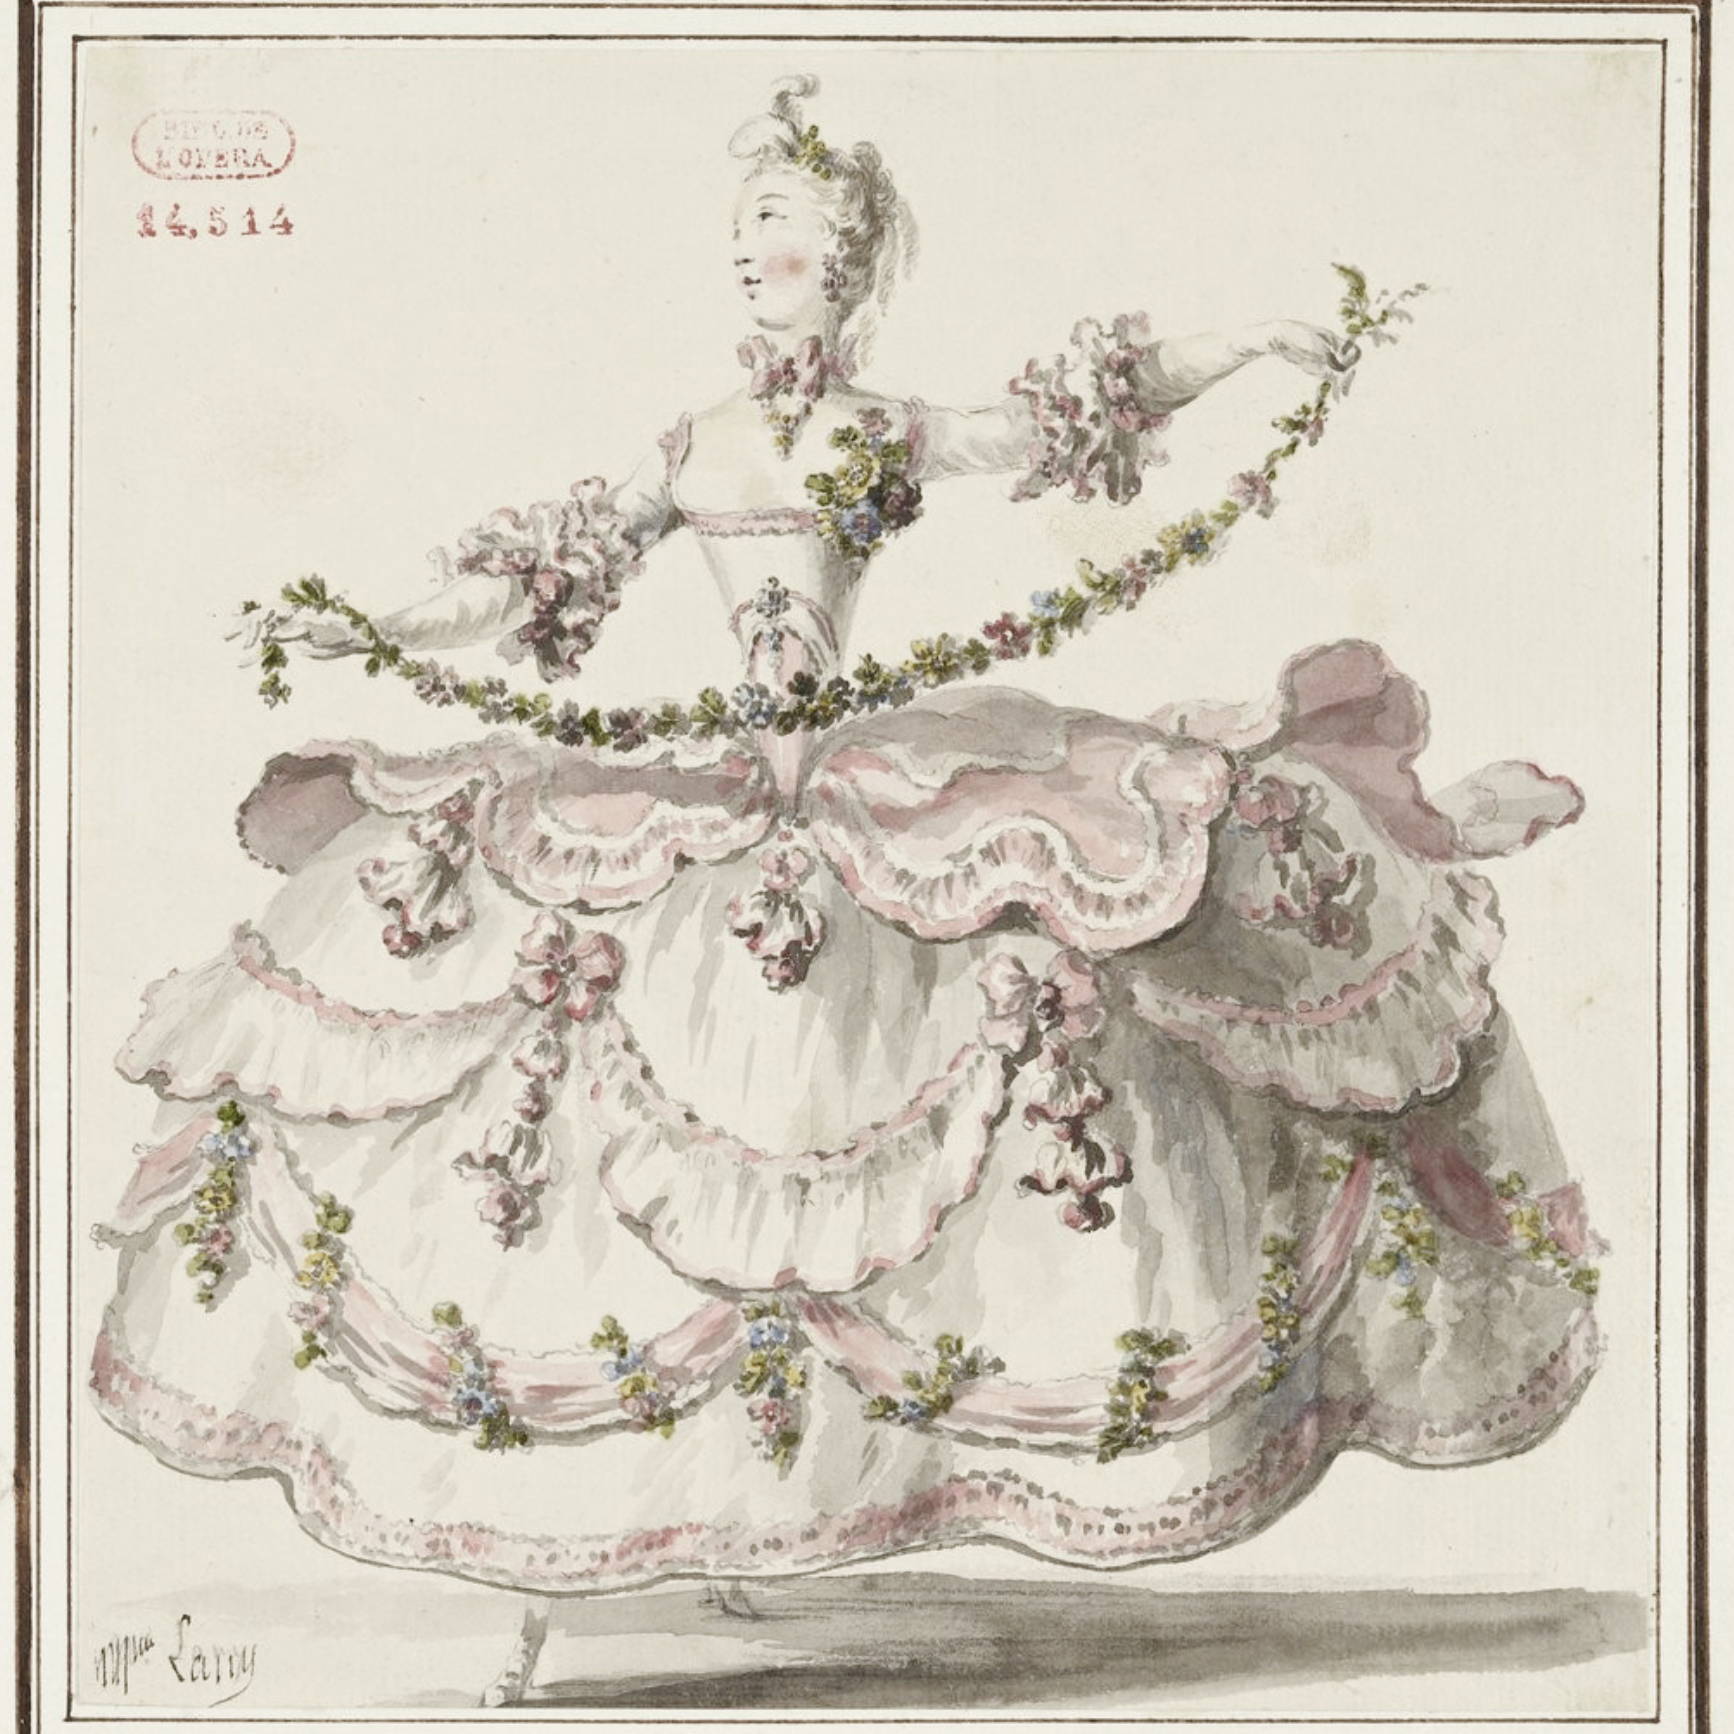 Illustration of Marie Antoinette